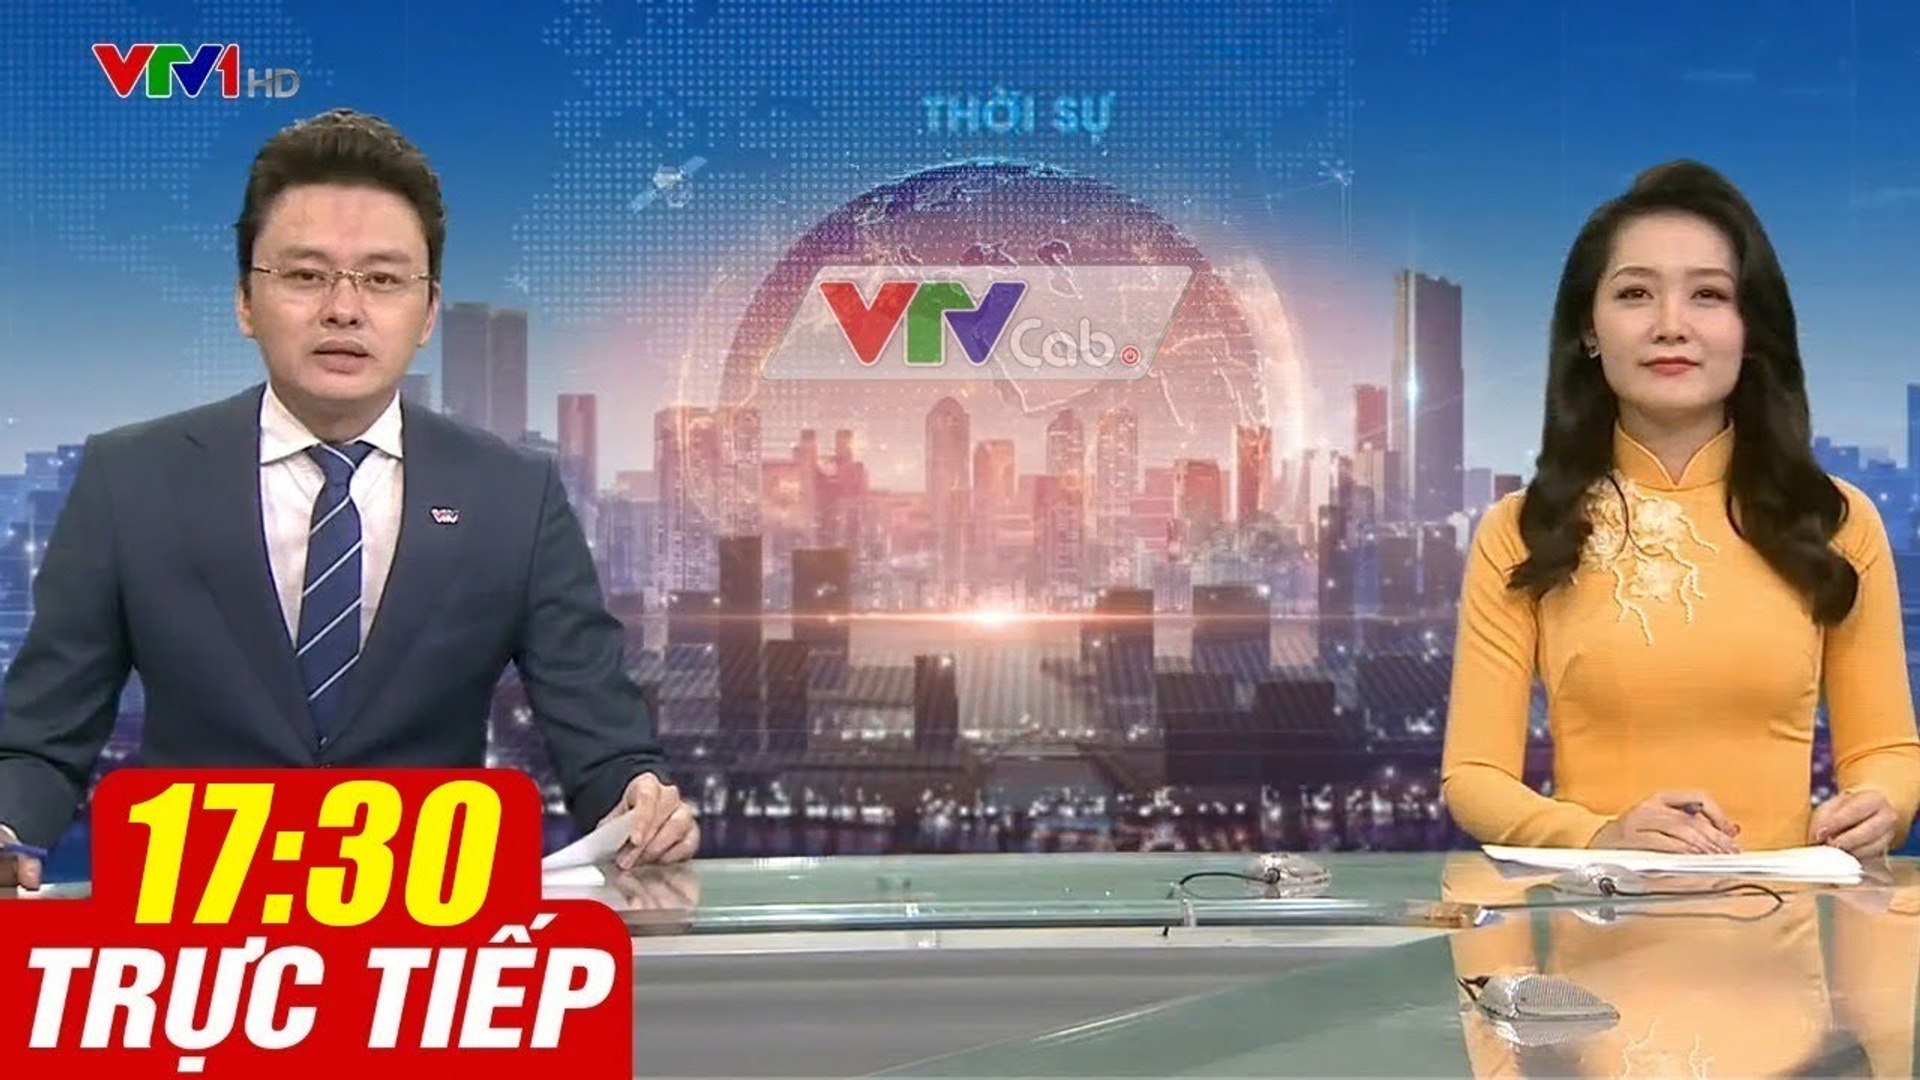 Trực Tiếp VIỆT NAM HÔM NAY 17h30 ngày 13.08.2020  Tin tức thời sự VTV1 mới nhất hôm nay